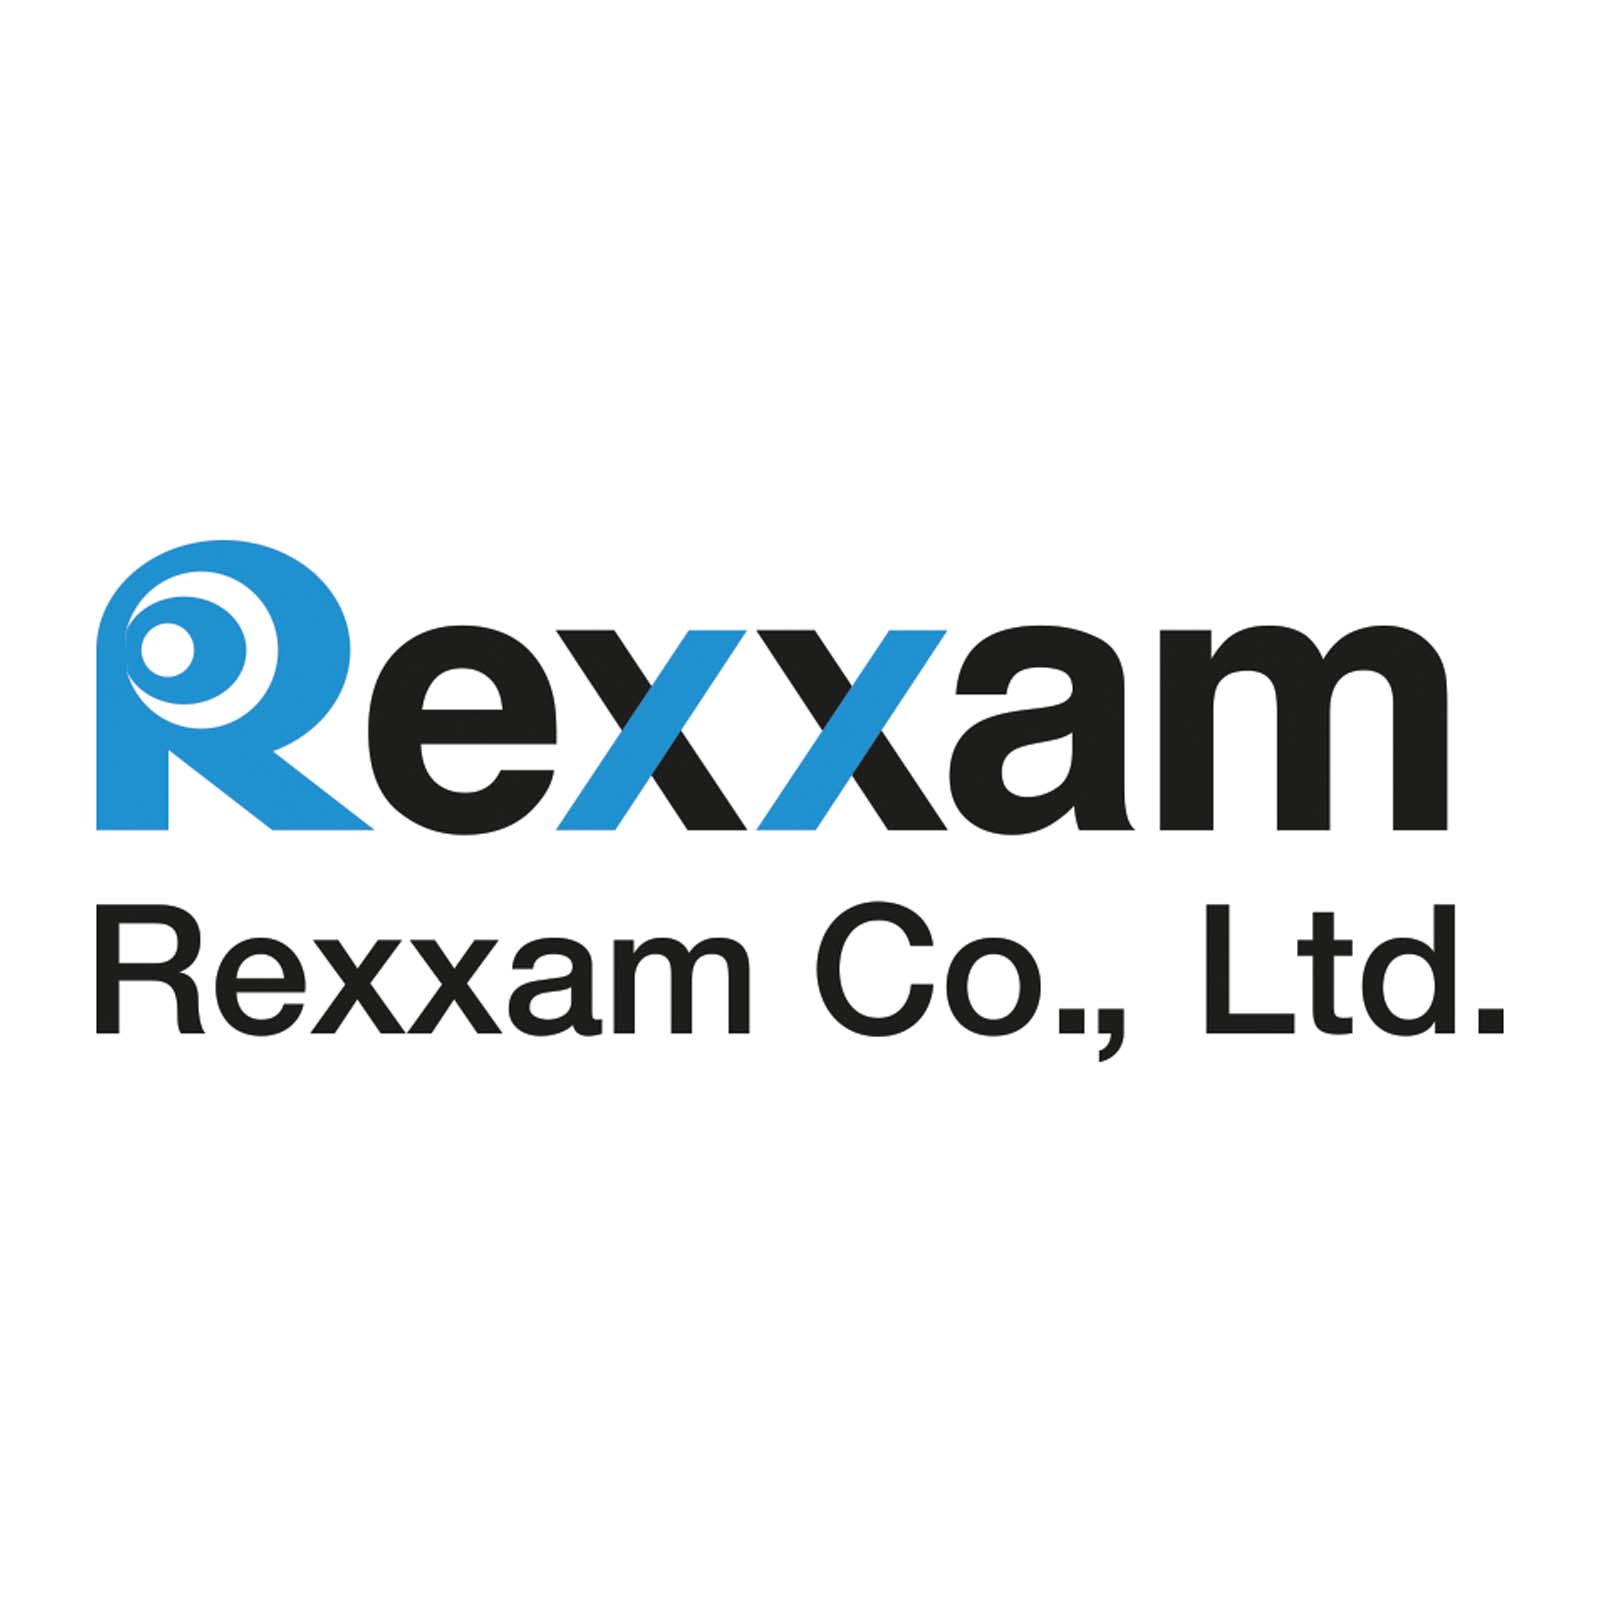 Rexxam Co., Ltd. [33246]